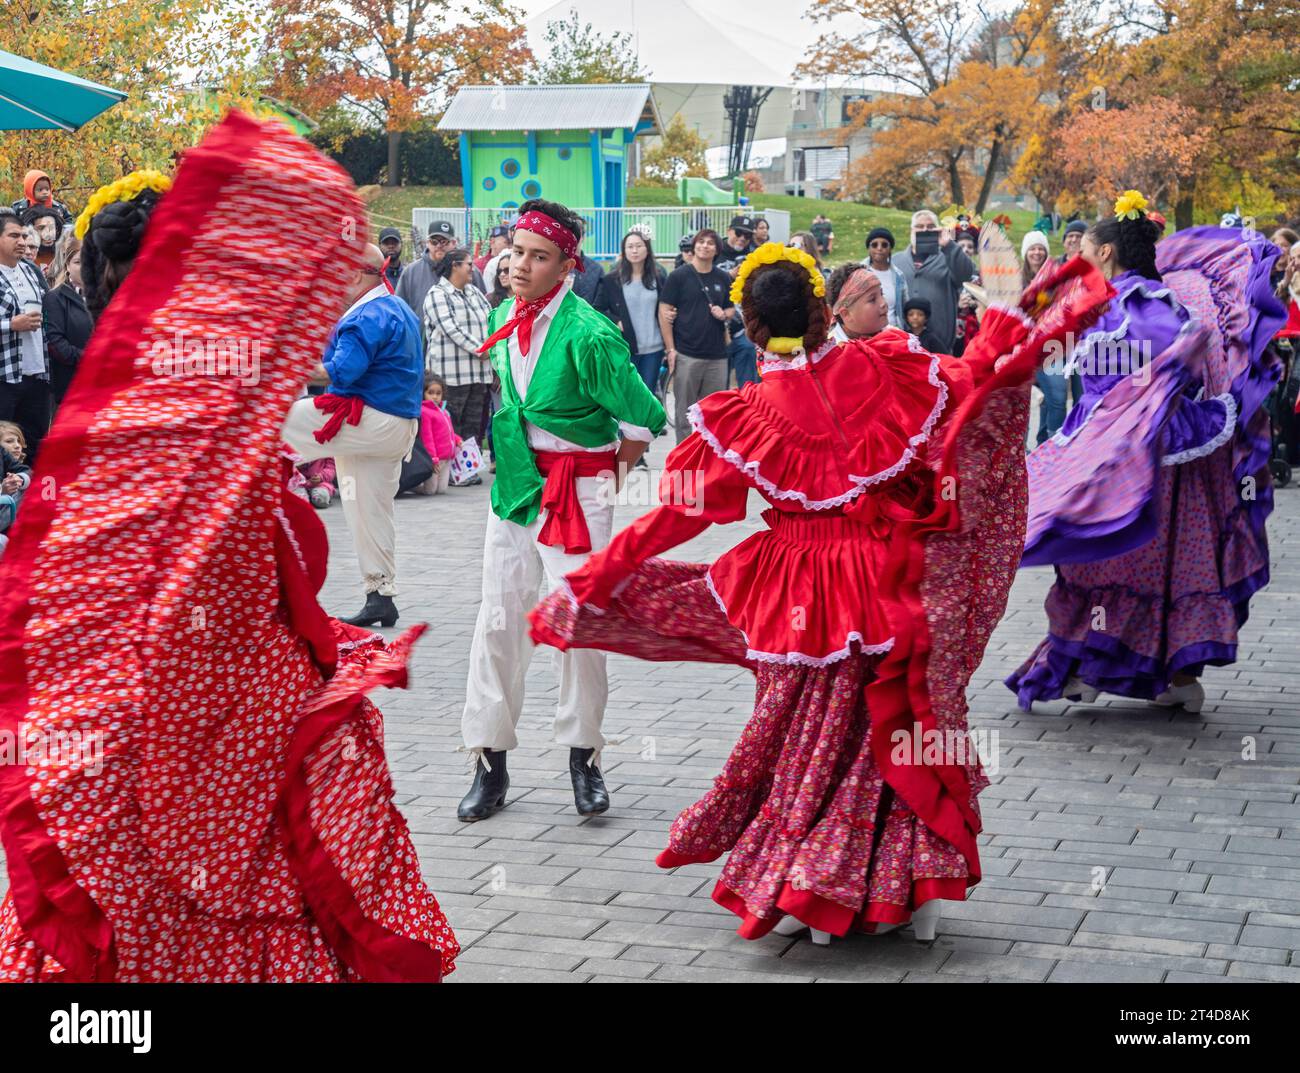 Detroit, Michigan - il Ballet Folklorico Moyocoyani Izel si esibisce durante la celebrazione del giorno dei morti al Valade Park sul lungofiume di Detroit. Foto Stock